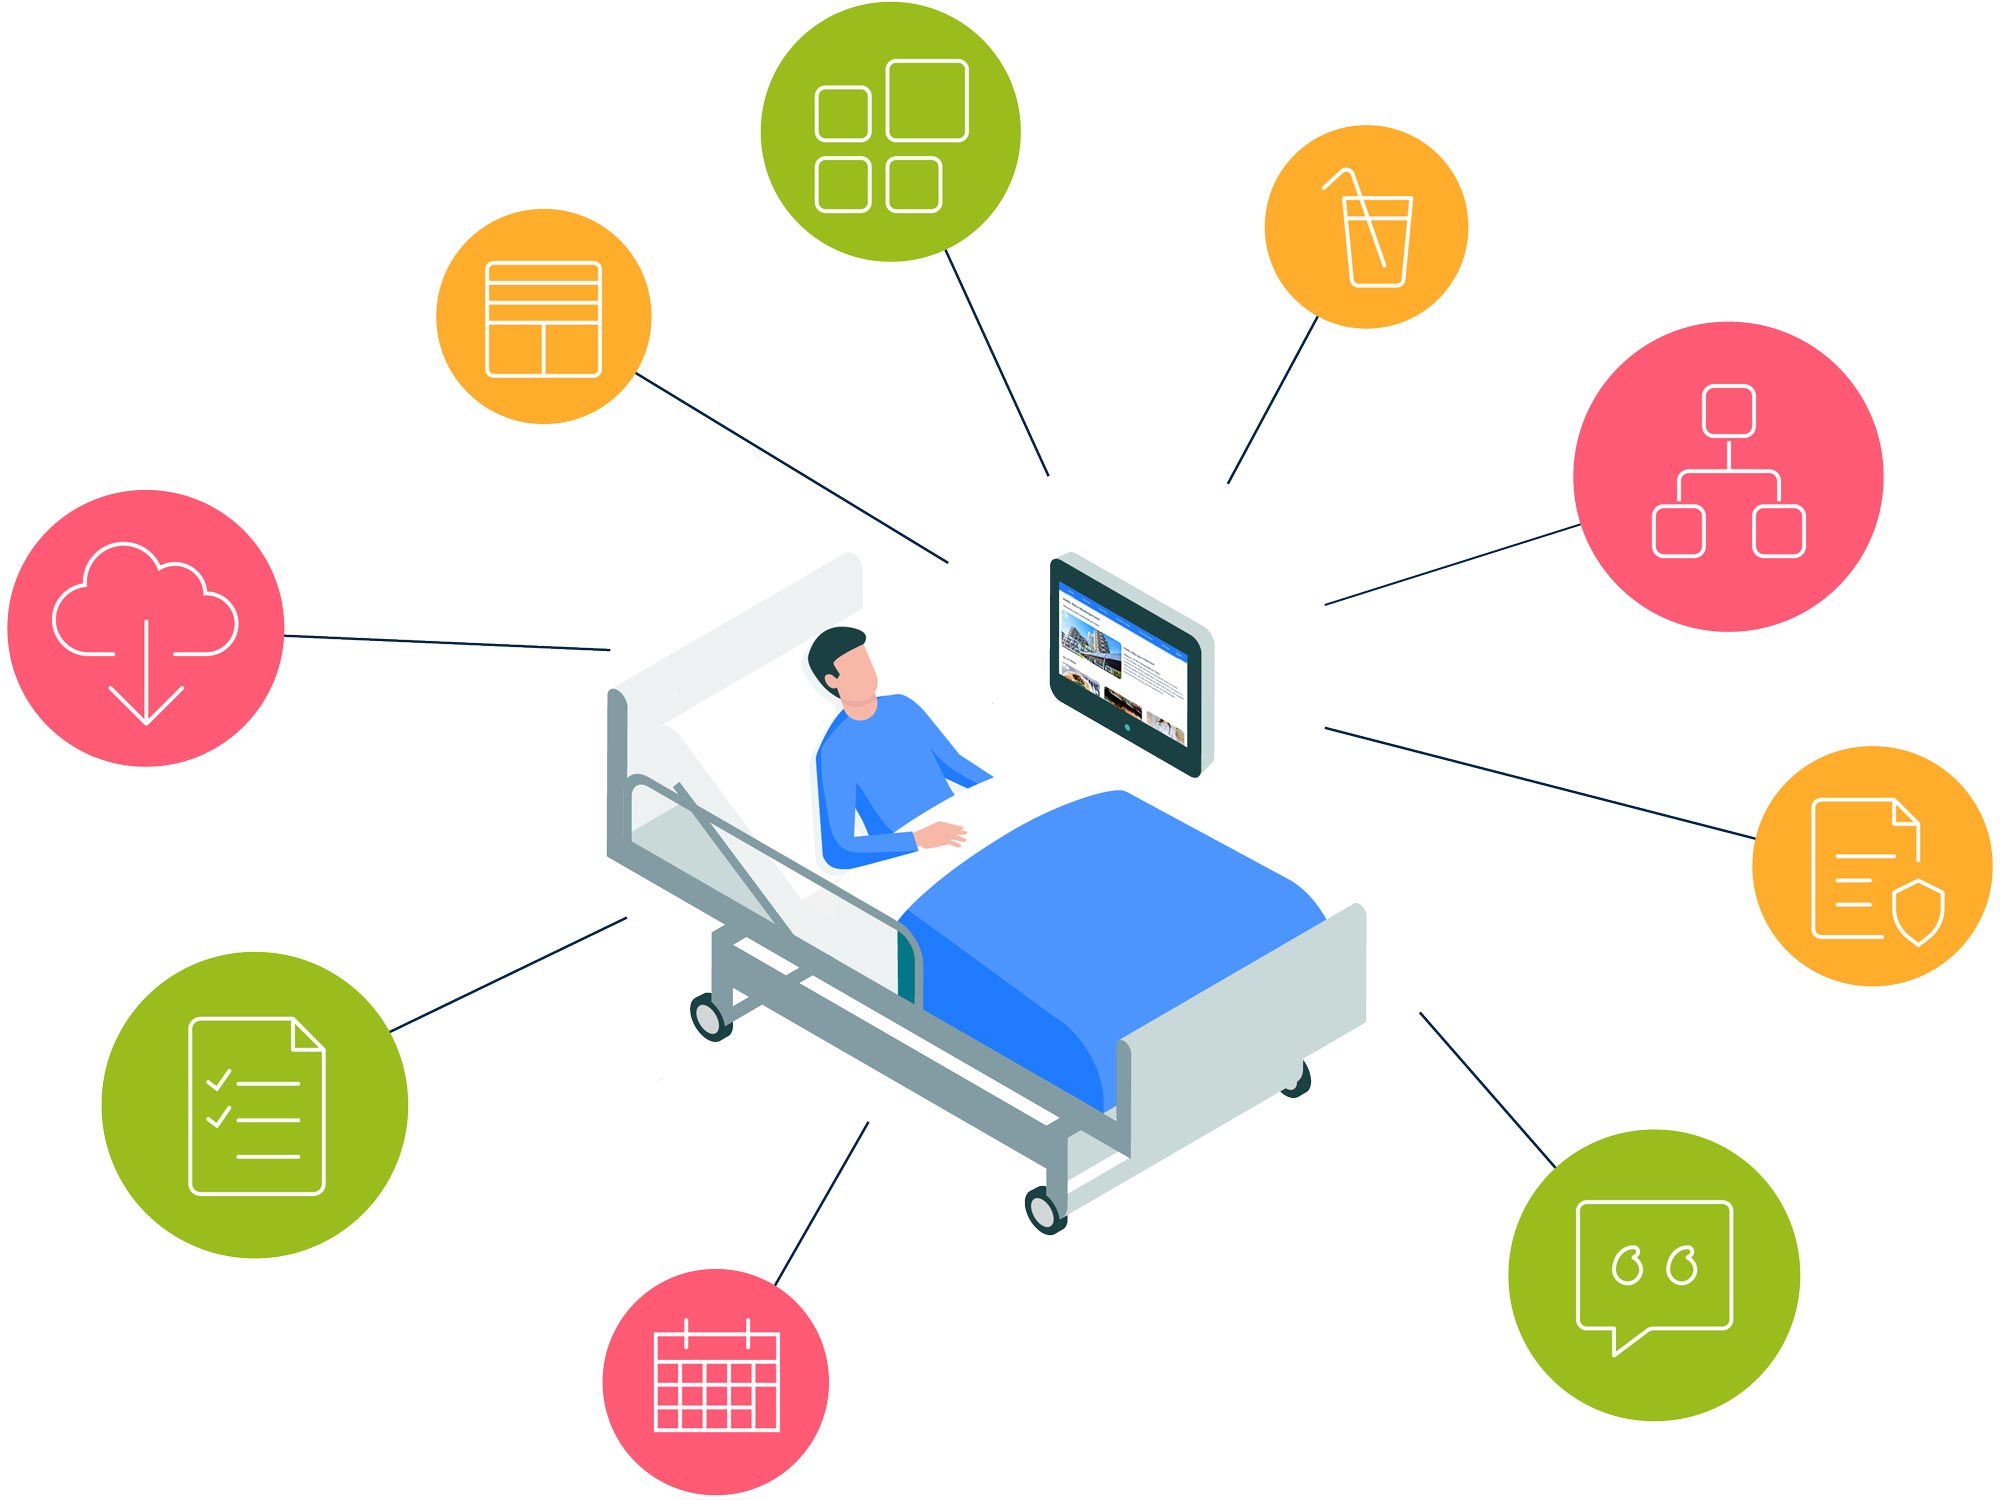 ConnectedCare Plattform: Patient liegt im Krankenhausbett mit Bedside Terminal, verschiedene Icons führen zum Bedside Terminal